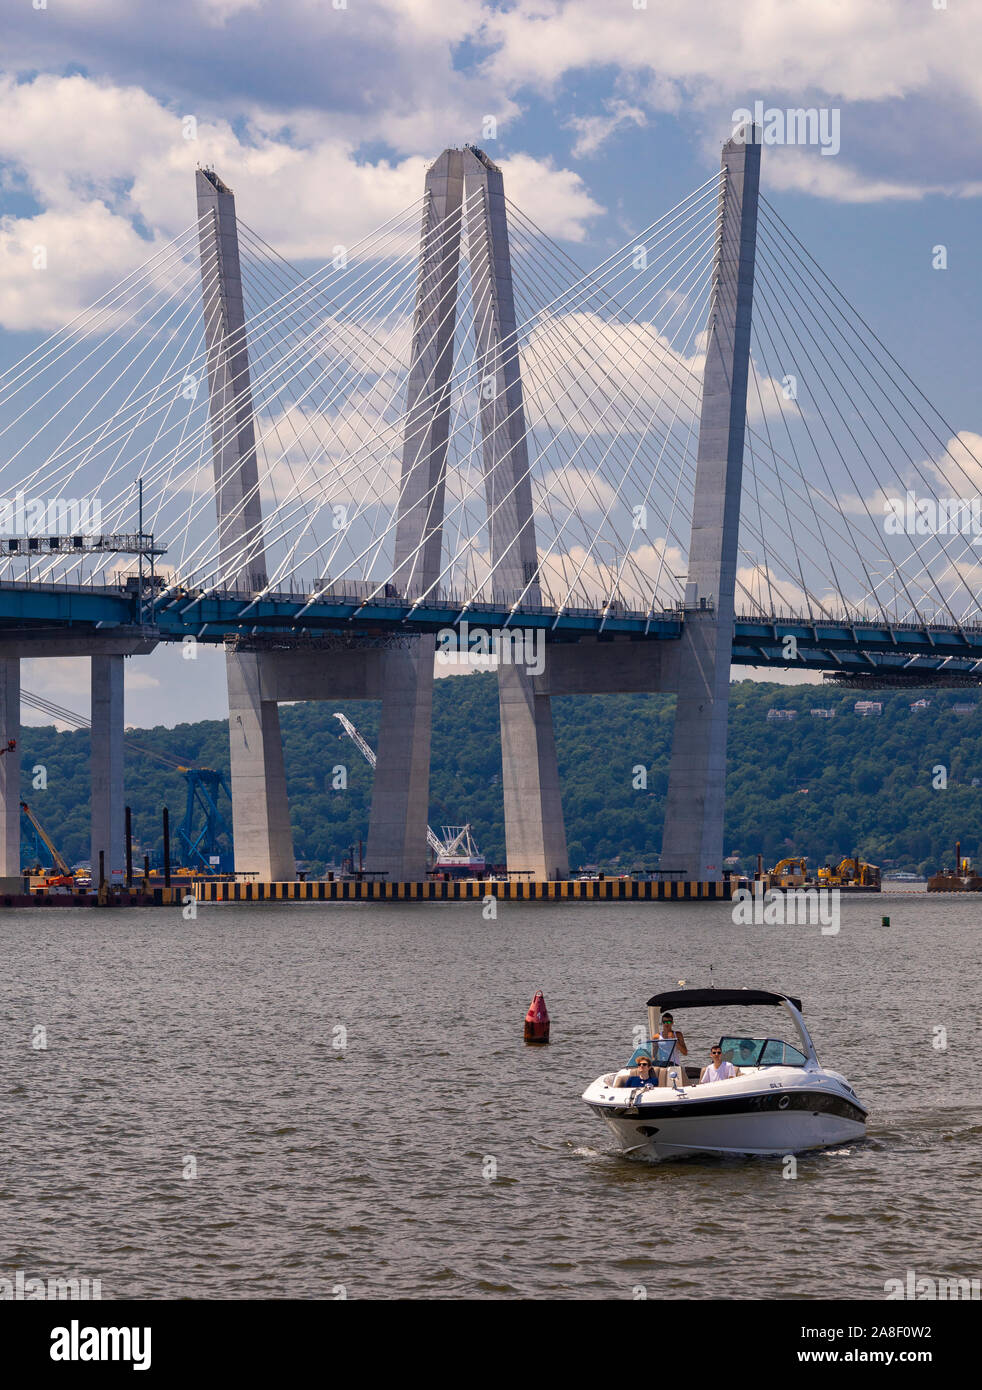 TARRYTOWN, NEW YORK, USA - Petit bateau à moteur sur la rivière Hudson, près du pont Tappan Zee. Banque D'Images